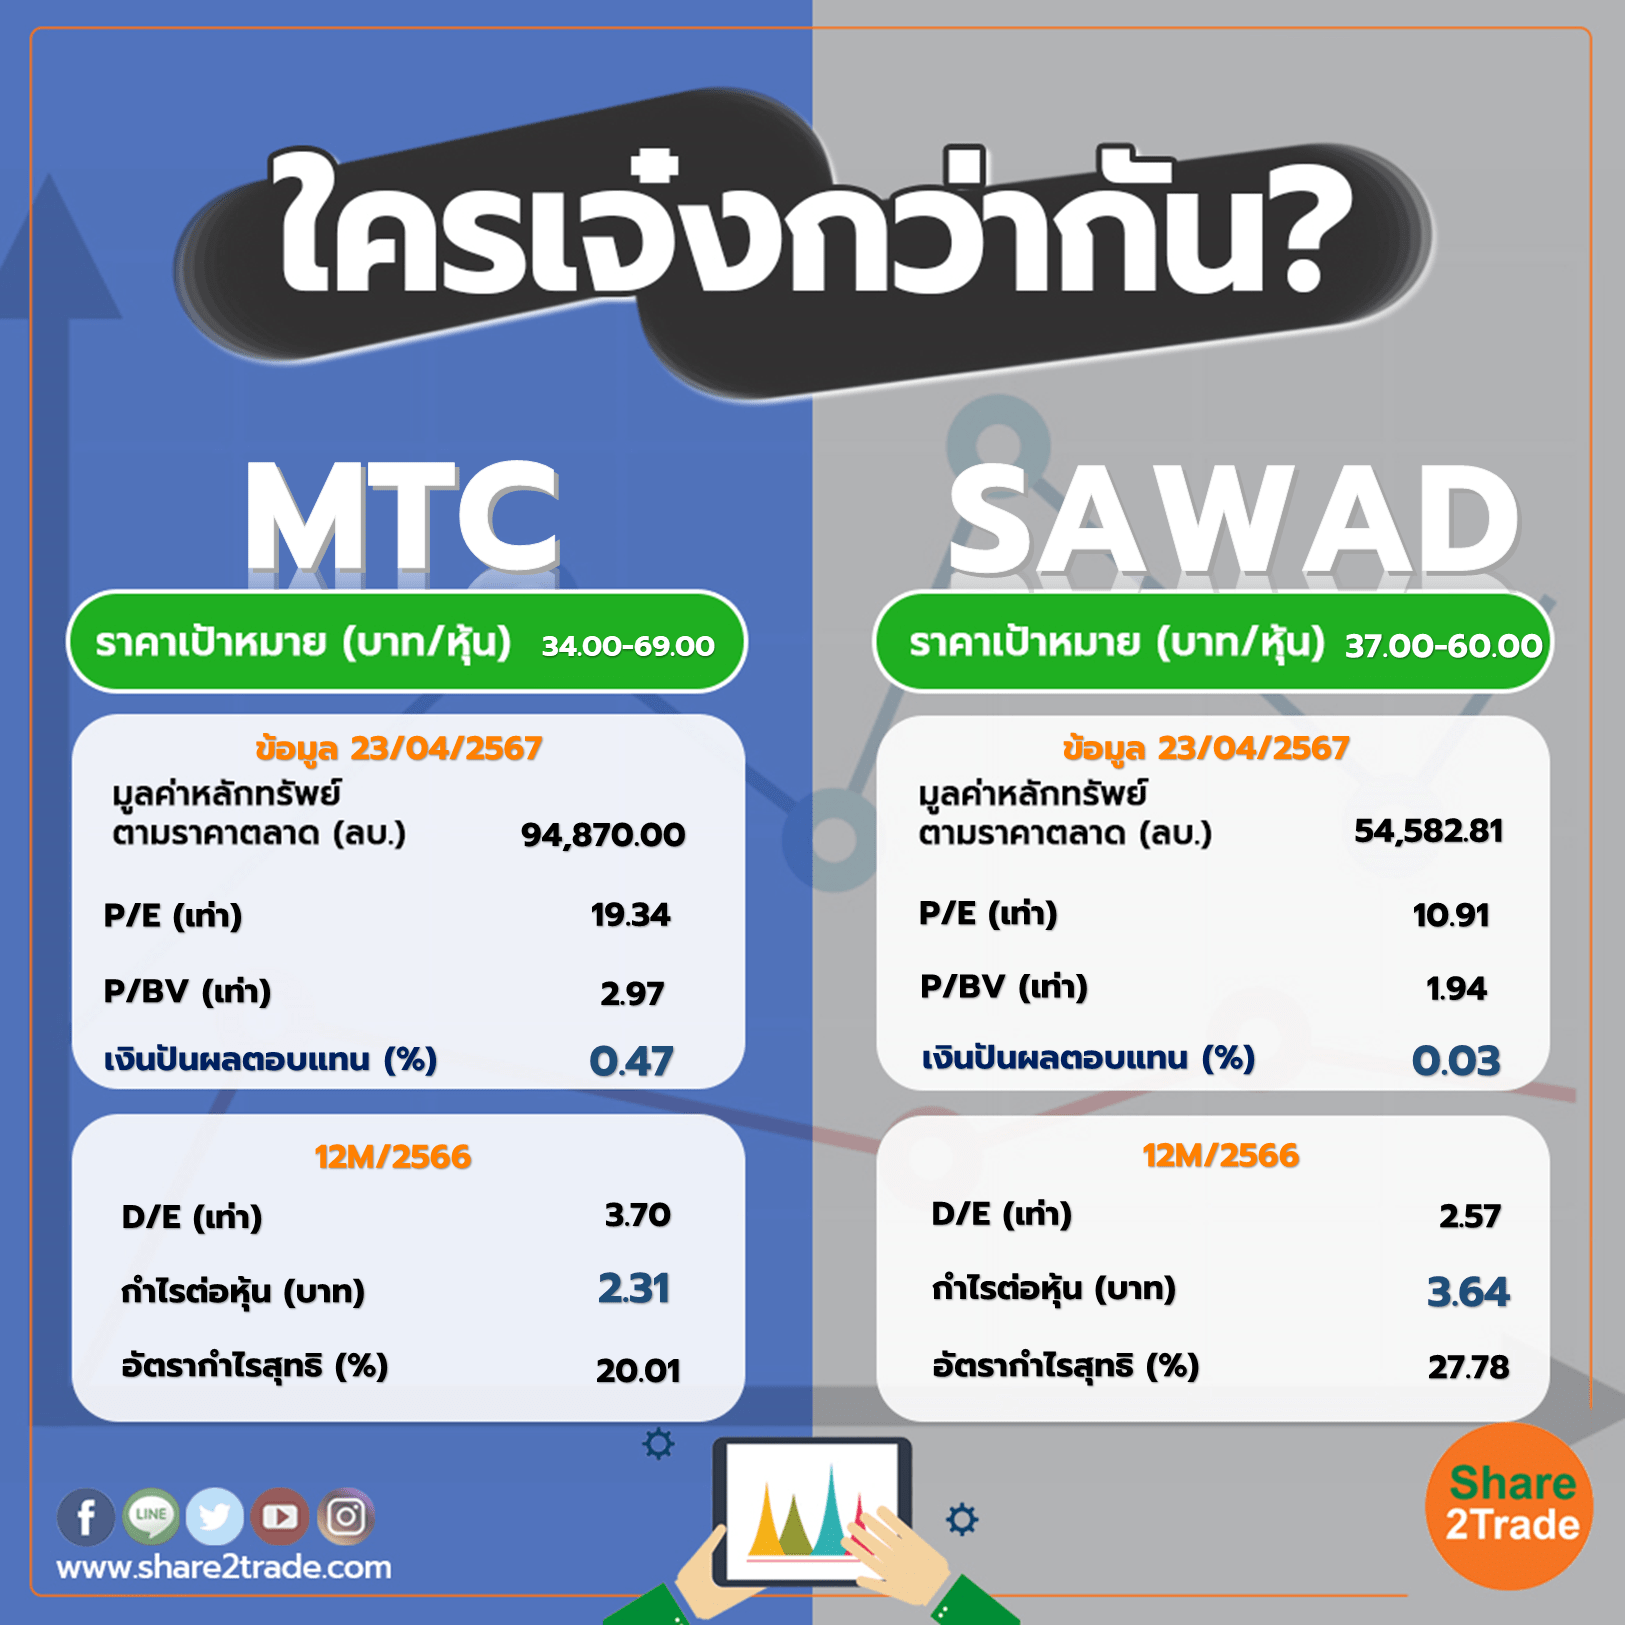 ใครเจ๋งกว่ากัน "MTC" VS "SAWAD"